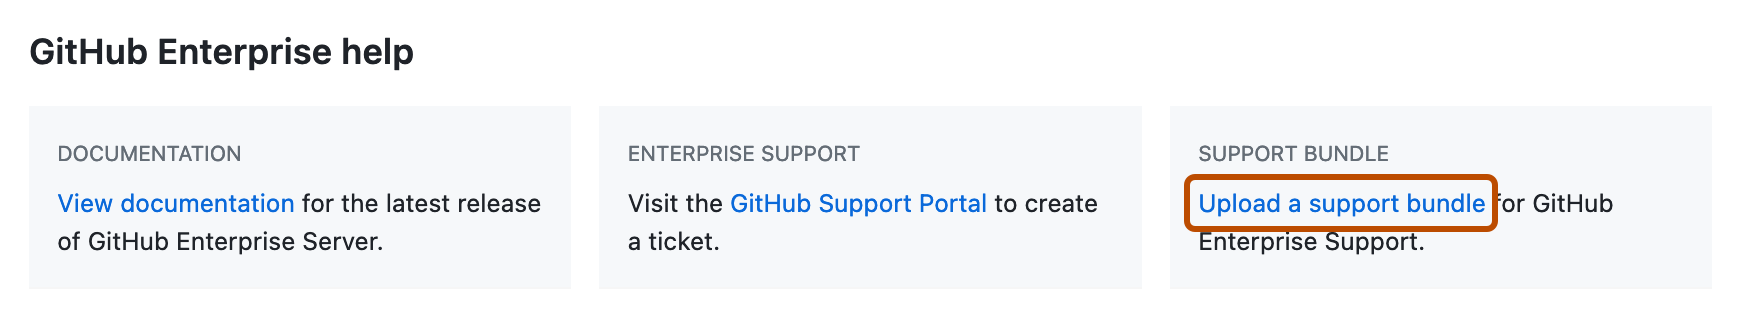 Снимок экрана: раздел "Справка GitHub Enterprise" на странице параметров предприятия. Элемент "Отправить ссылку на пакет поддержки" выделен темно-оранжевым прямоугольником.